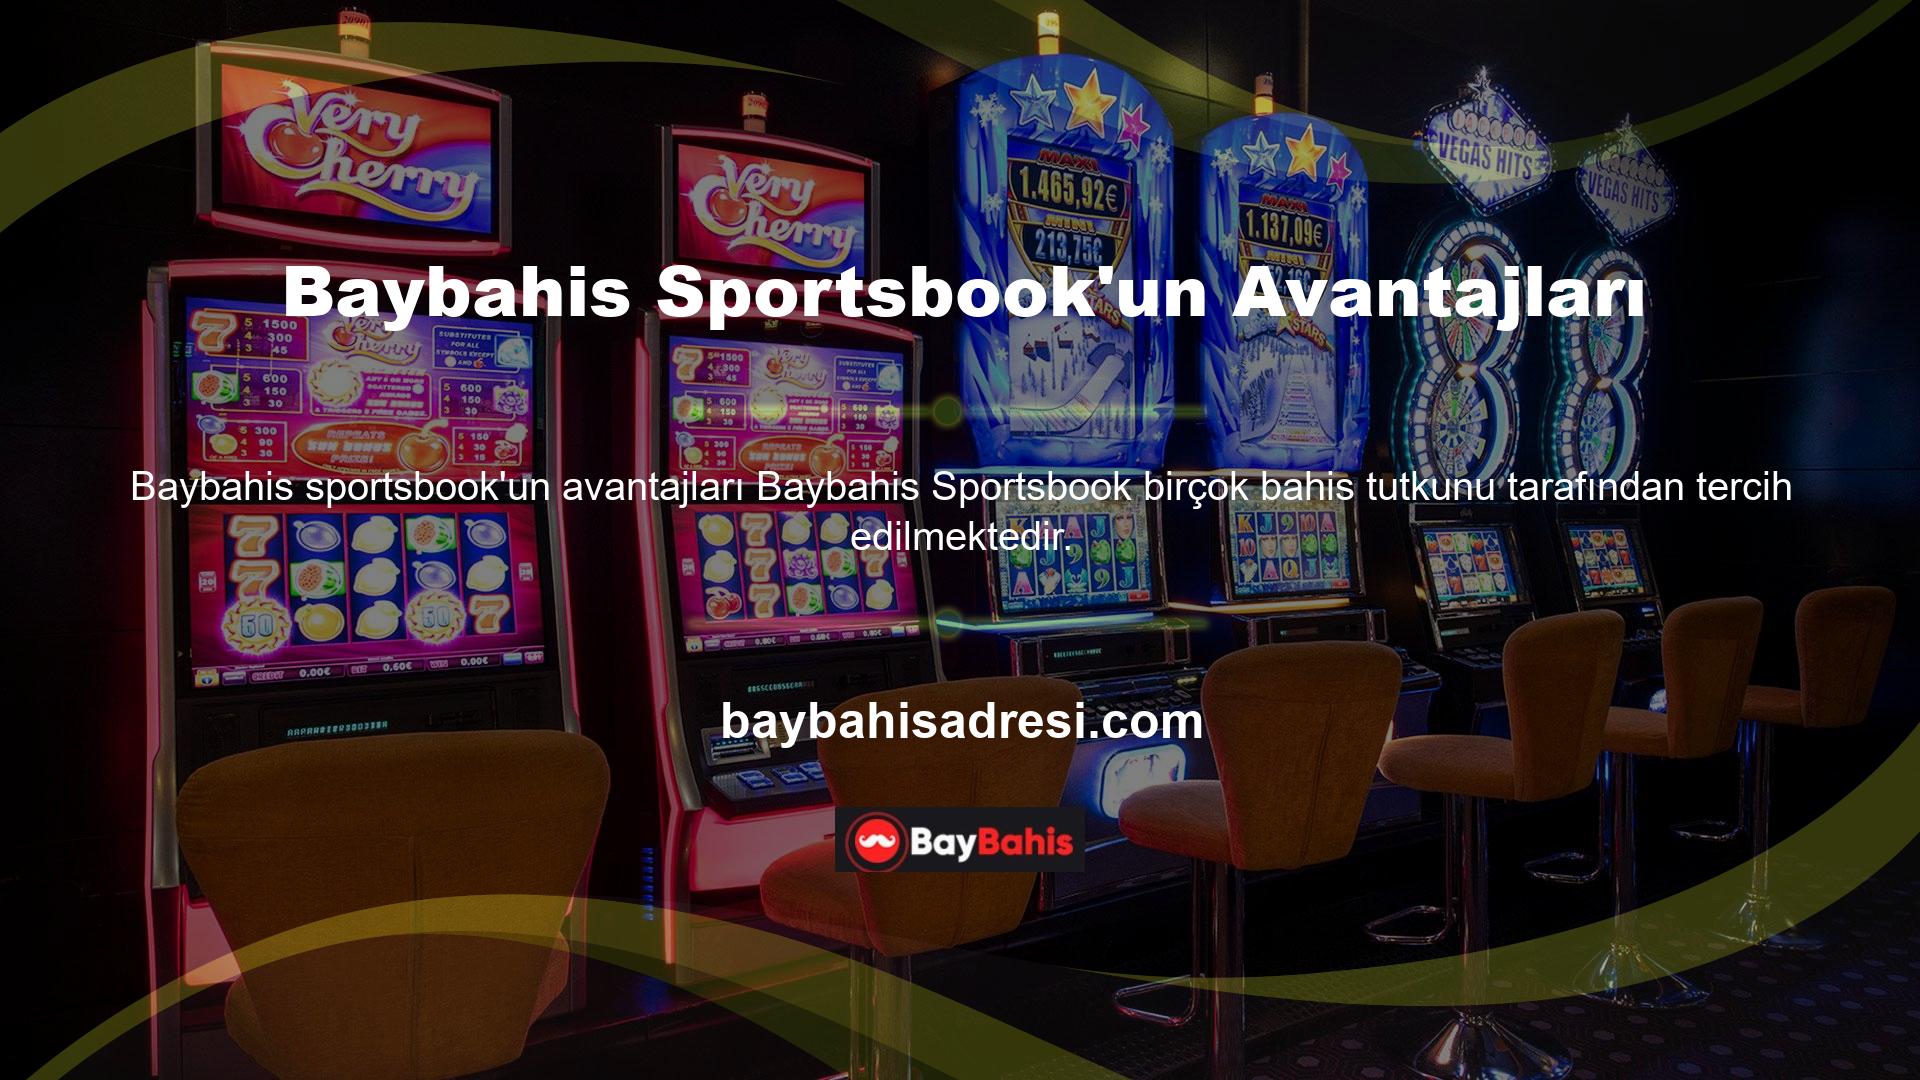 Baybahis Sportsbook'un avantajları:

	Farklı spor dallarına bahis yapabilirsiniz